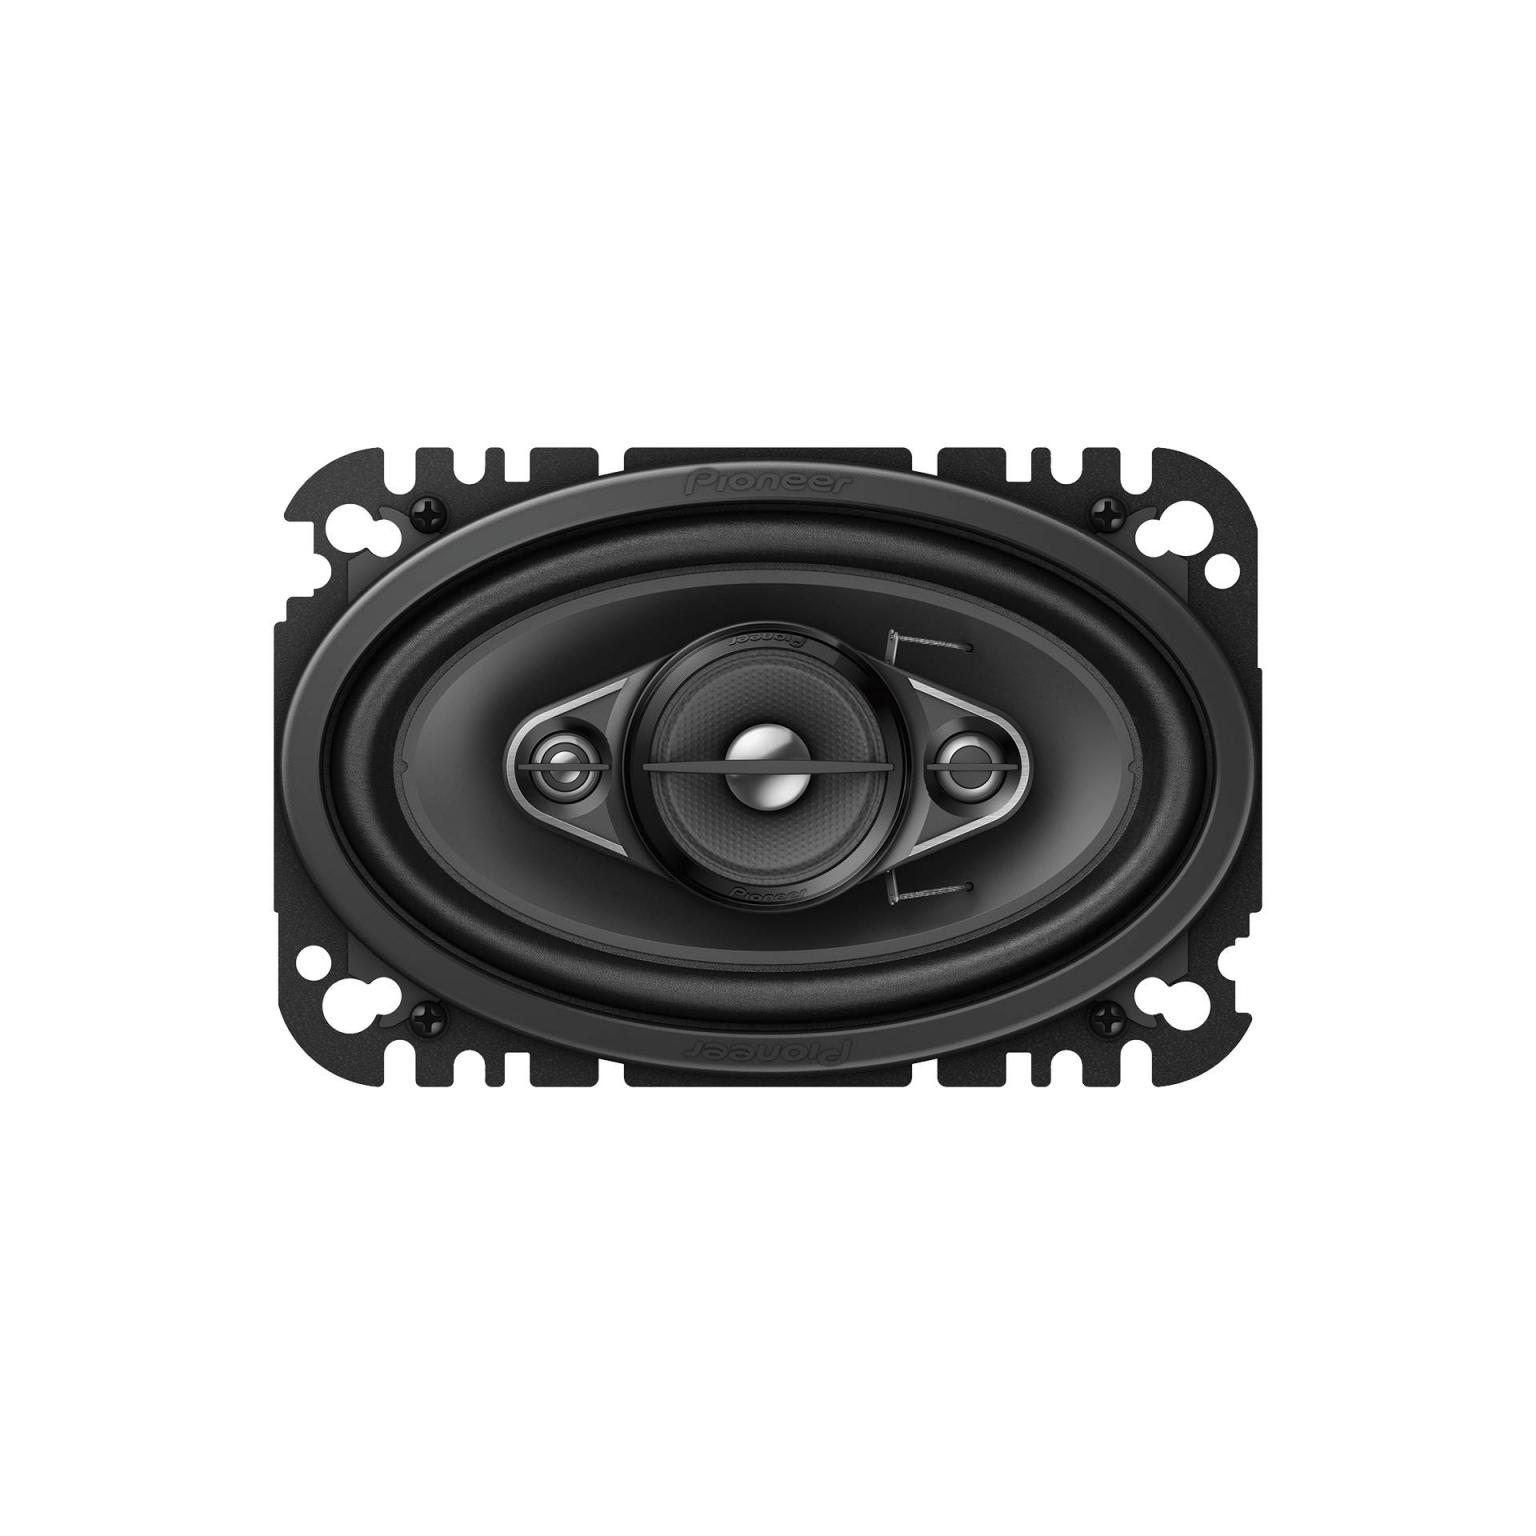 Fullrange speakers - 6 x 9 Inch - Pioneer